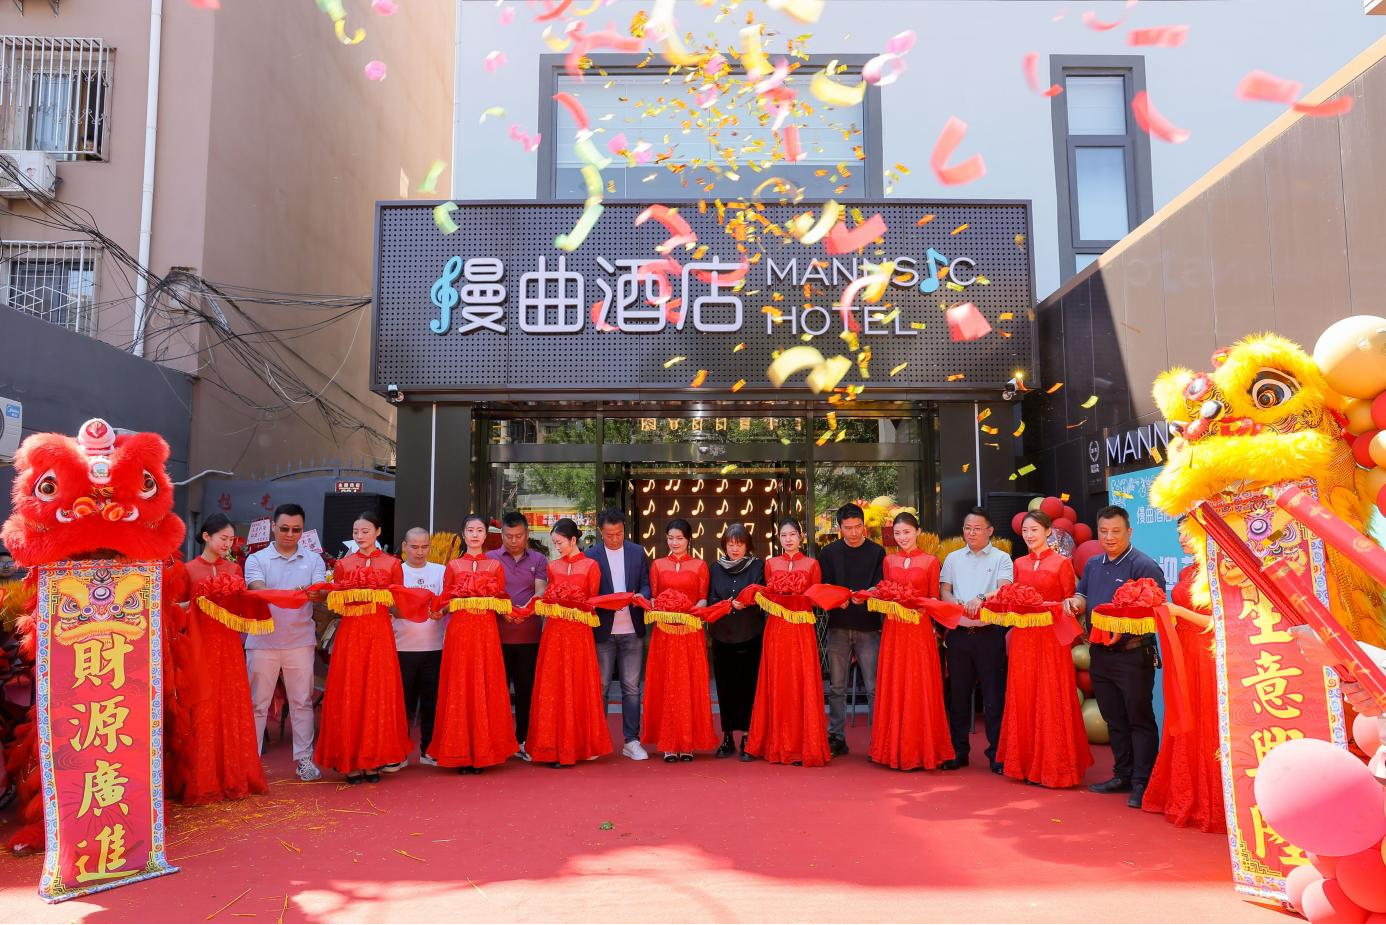 漫曲酒店北京环球度假区万达广场店盛大开业